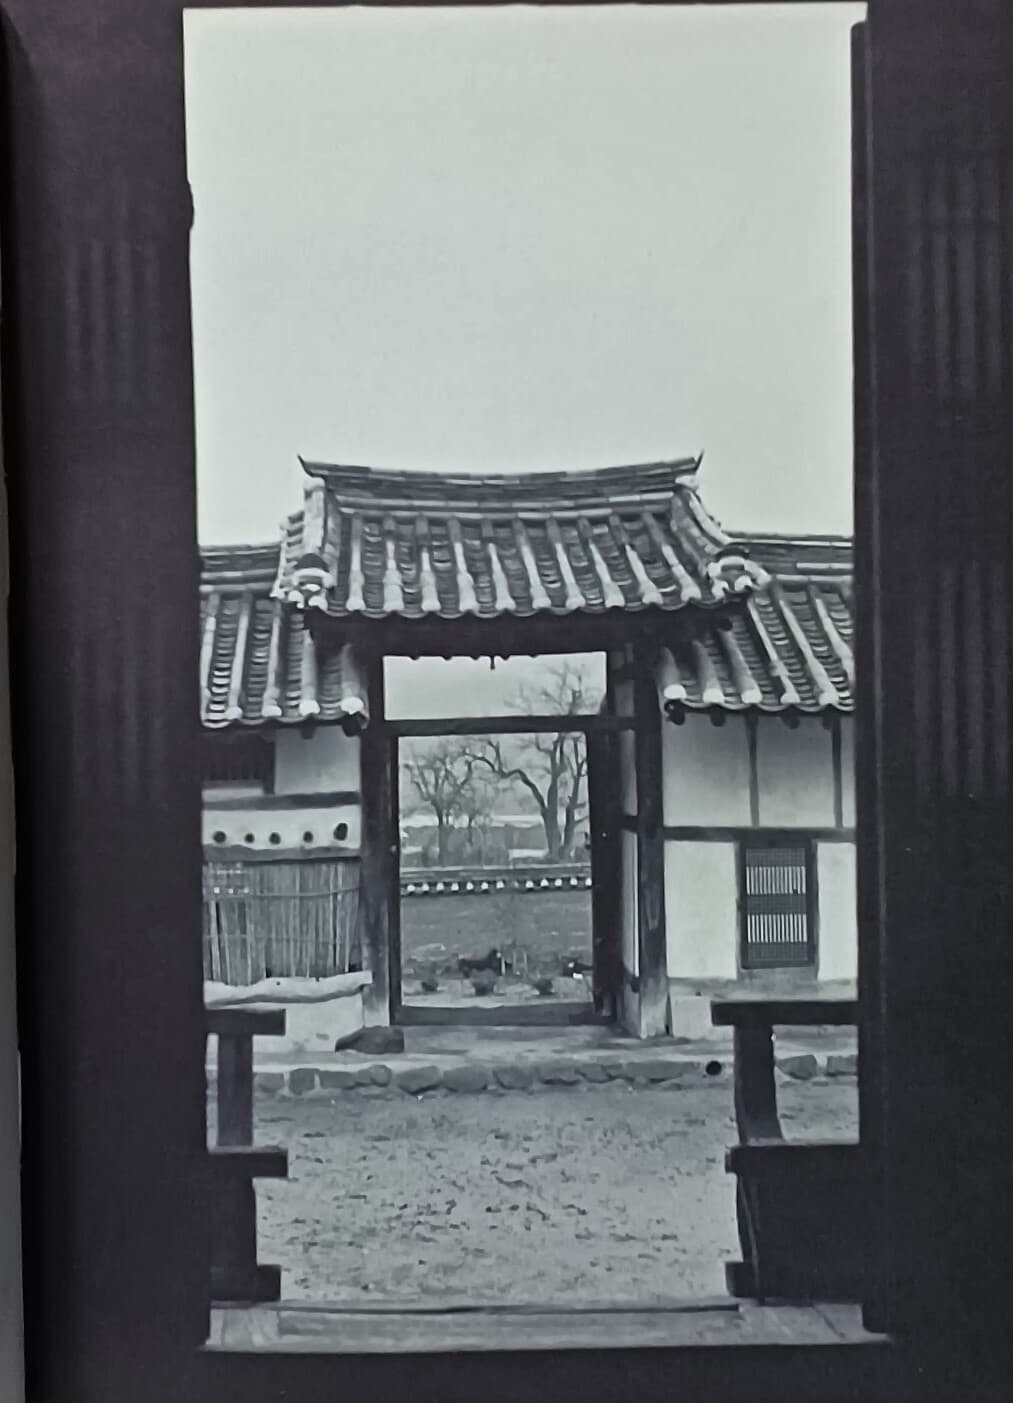 문(門) -이경재 사진집-한국건축의 공간과 통로-197/265/20,219쪽,하드커버-초판-아래설명참조-